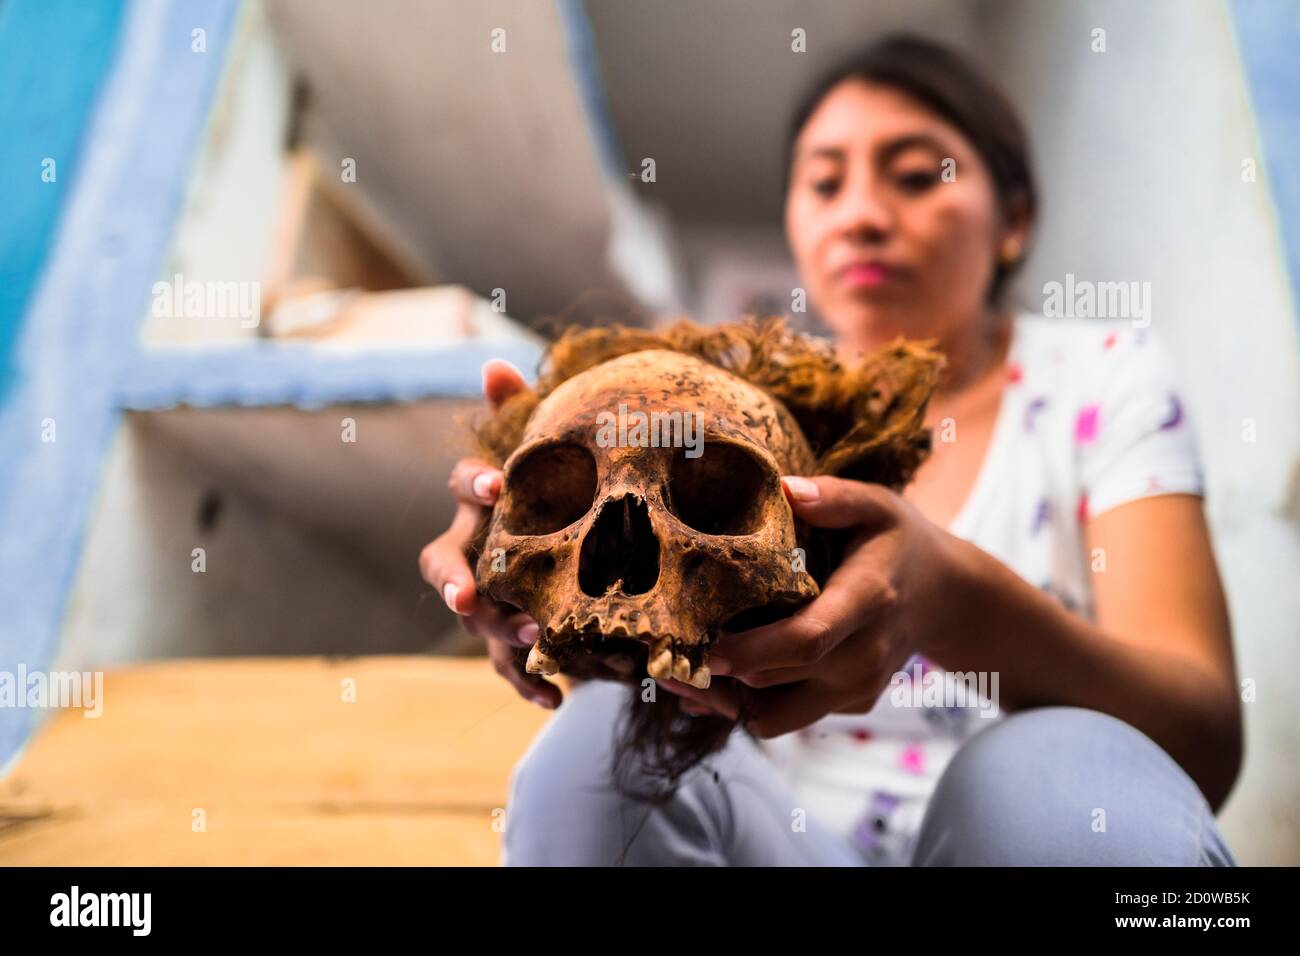 Eine junge Maya-Frau hält einen ausgetrockneten Schädel ihrer verstorbenen Großmutter während des Knochenreinigungsrituals auf dem Friedhof in Pomuch, Mexiko. Stockfoto